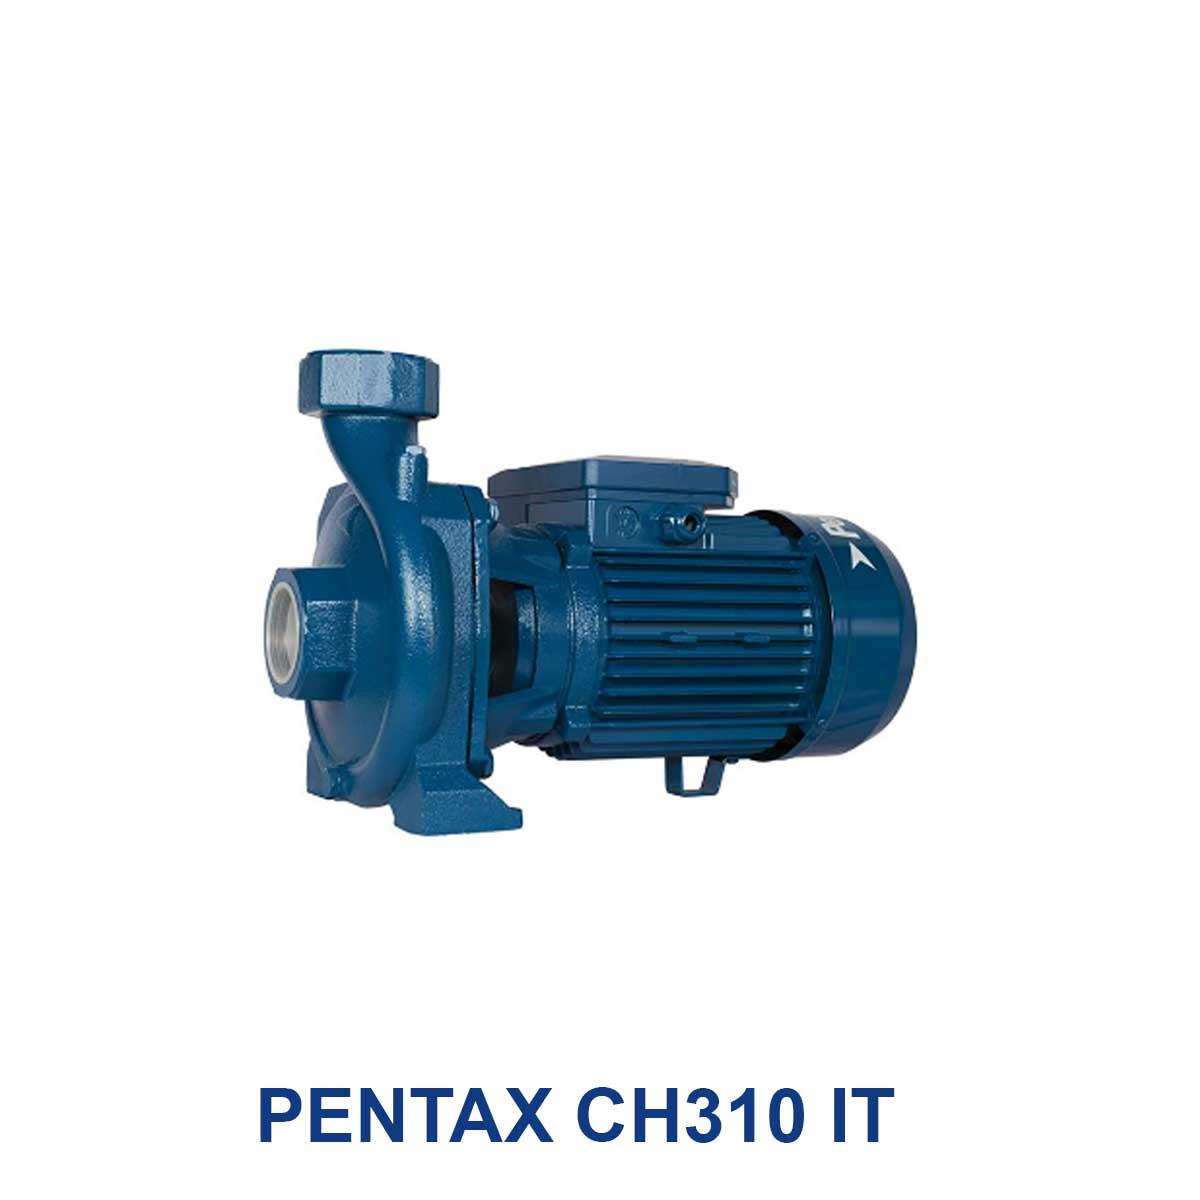 PENTAX-CH310-IT